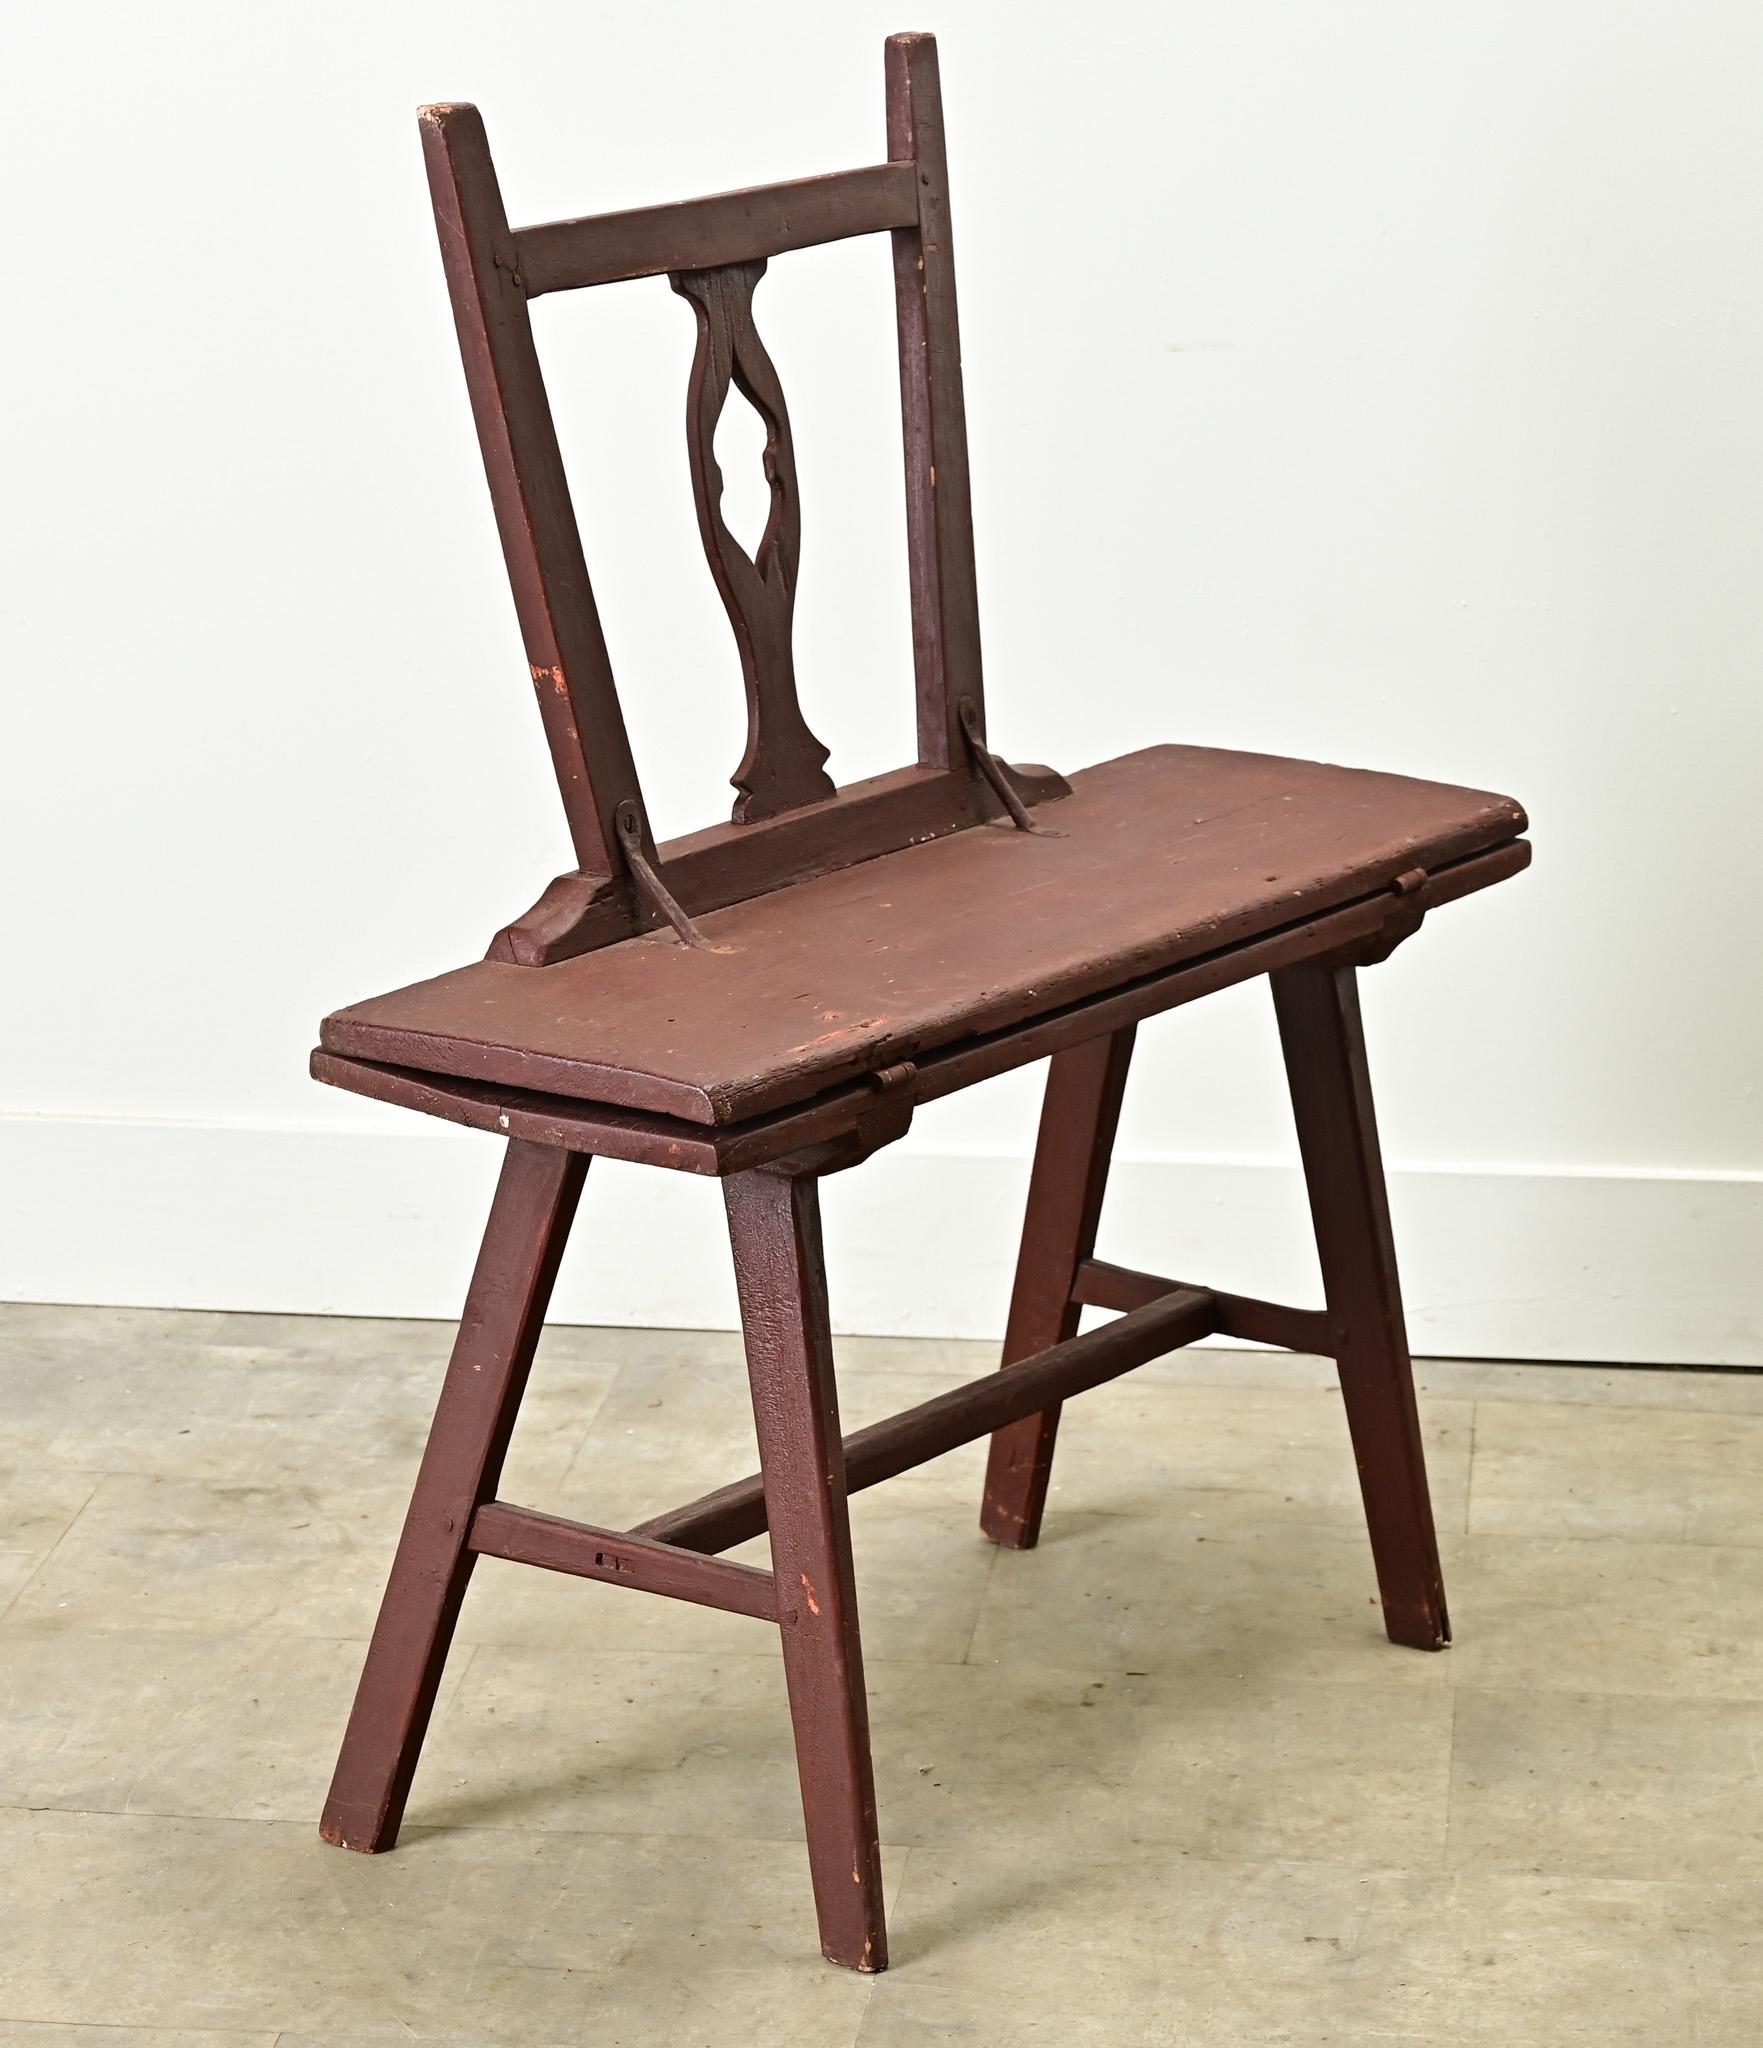 Ein bemalter Stuhl-Tisch aus Kiefernholz aus den Niederlanden aus den 1800er Jahren. Bei dieser funktionalen Antiquität handelt es sich um einen Stuhl, der durch handgeschmiedete Eisenscharniere in einen Tisch verwandelt werden kann. Die Rückenlehne